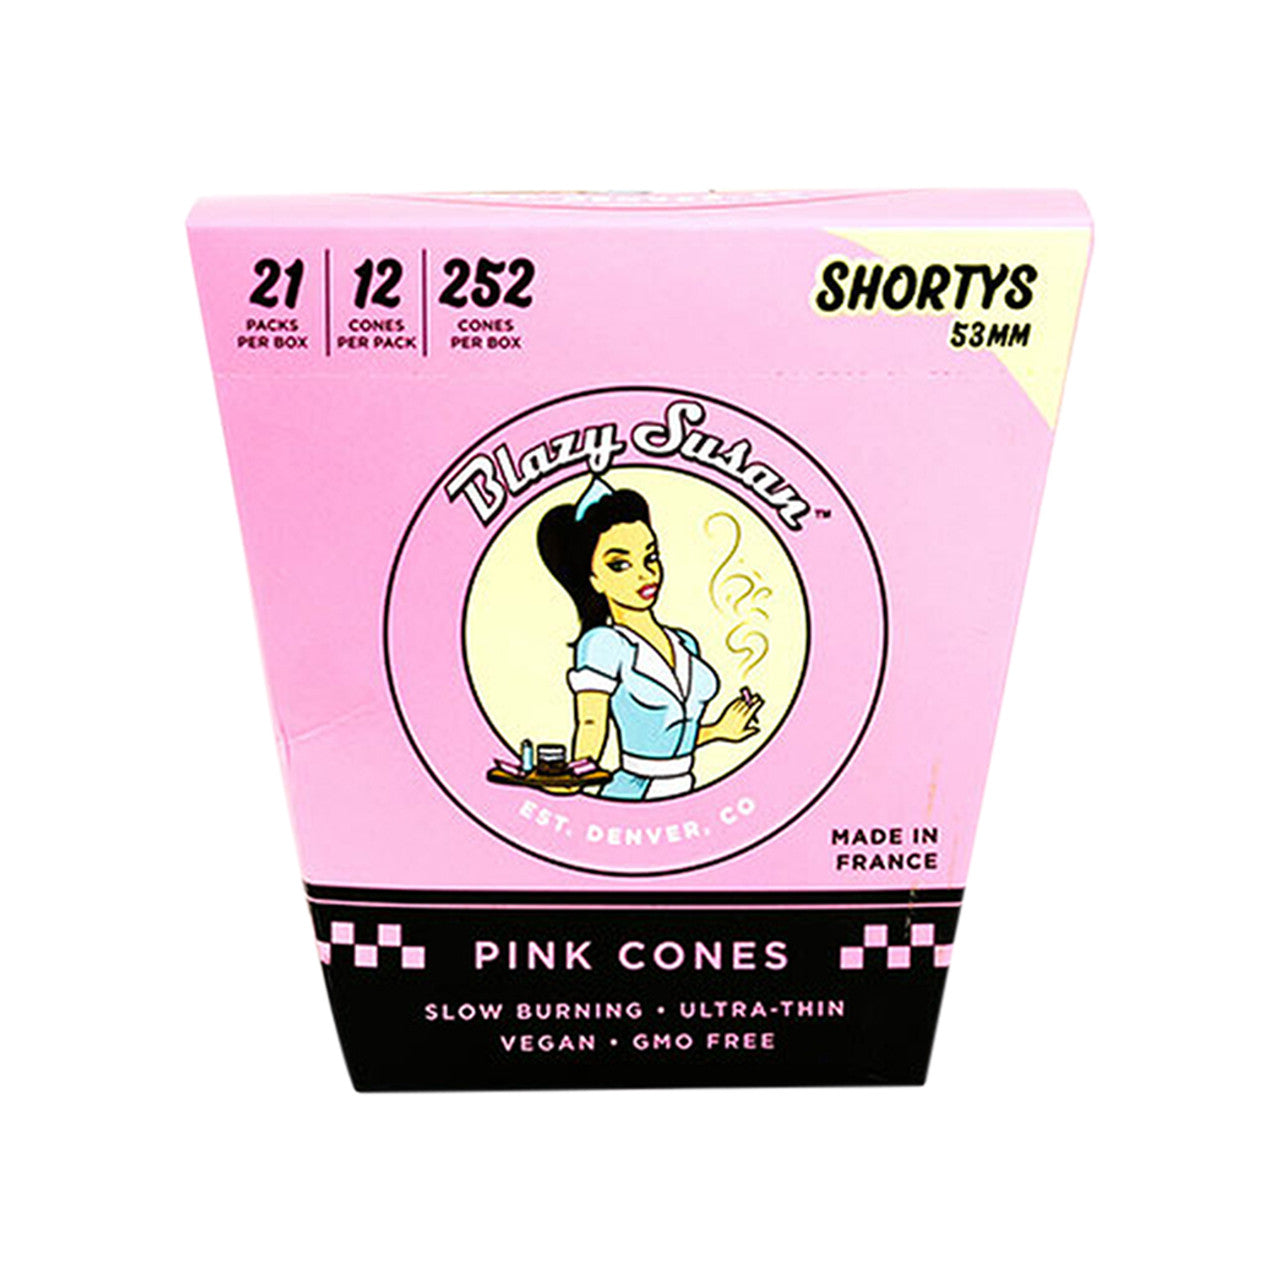 Blazy Susan Pink 53mm Pre-Roll Cones Shortys (12ct)